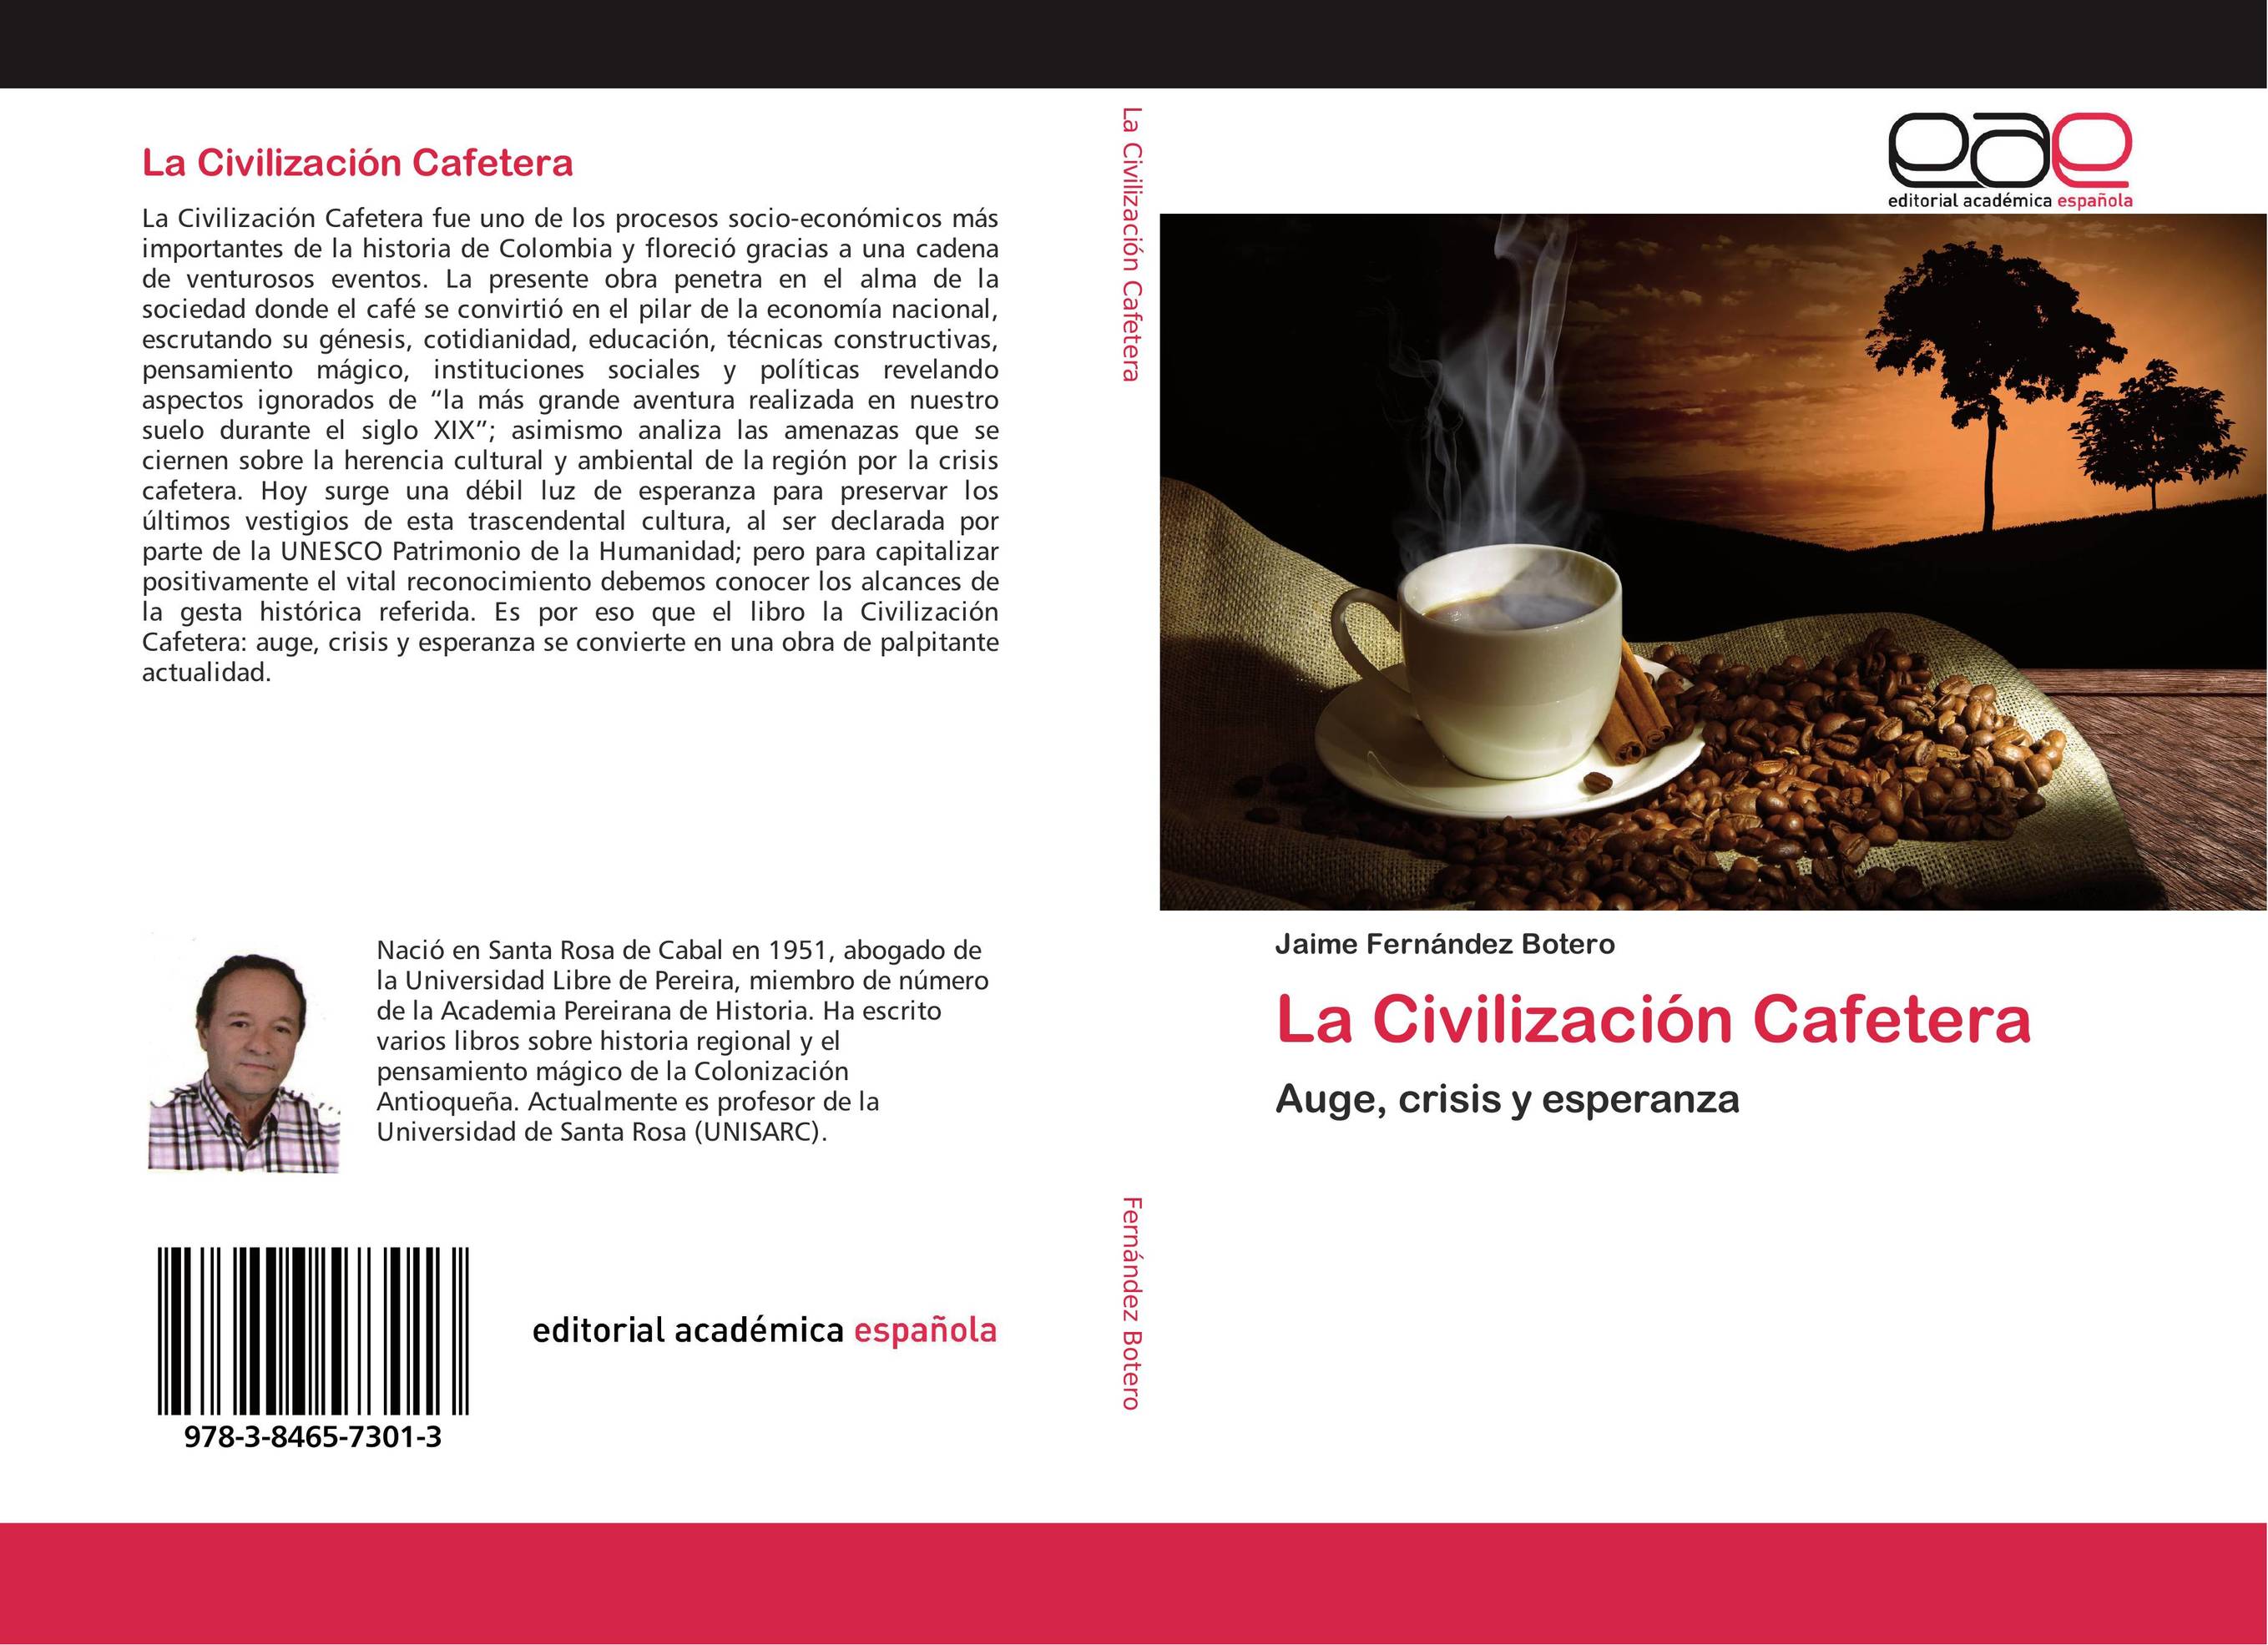 La Civilización Cafetera